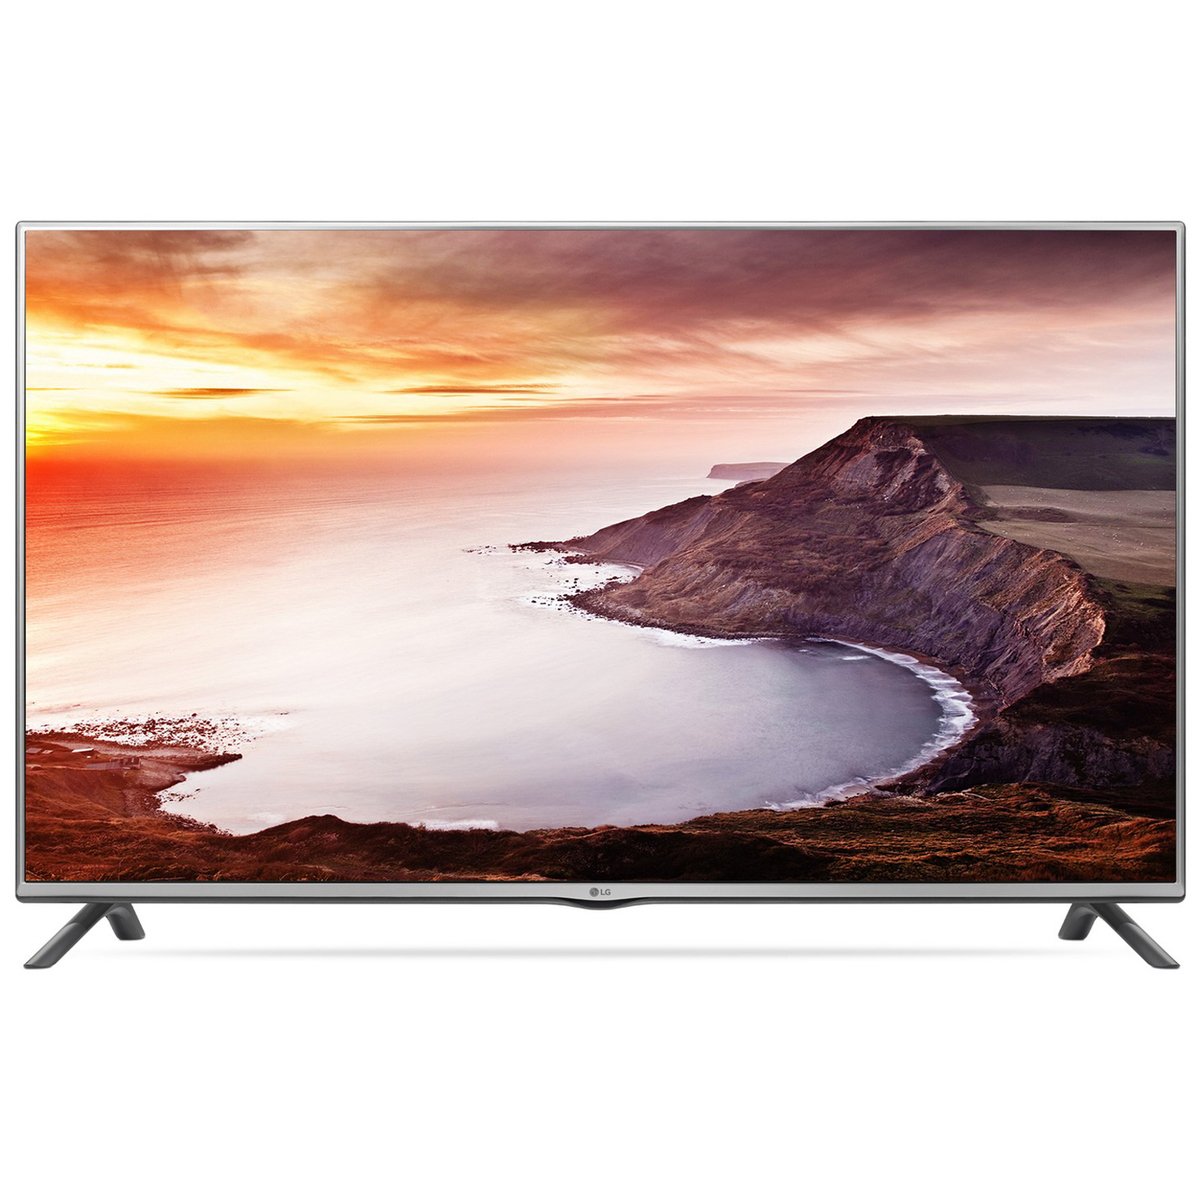 LG Full HD LED TV 42LF550T 42inch